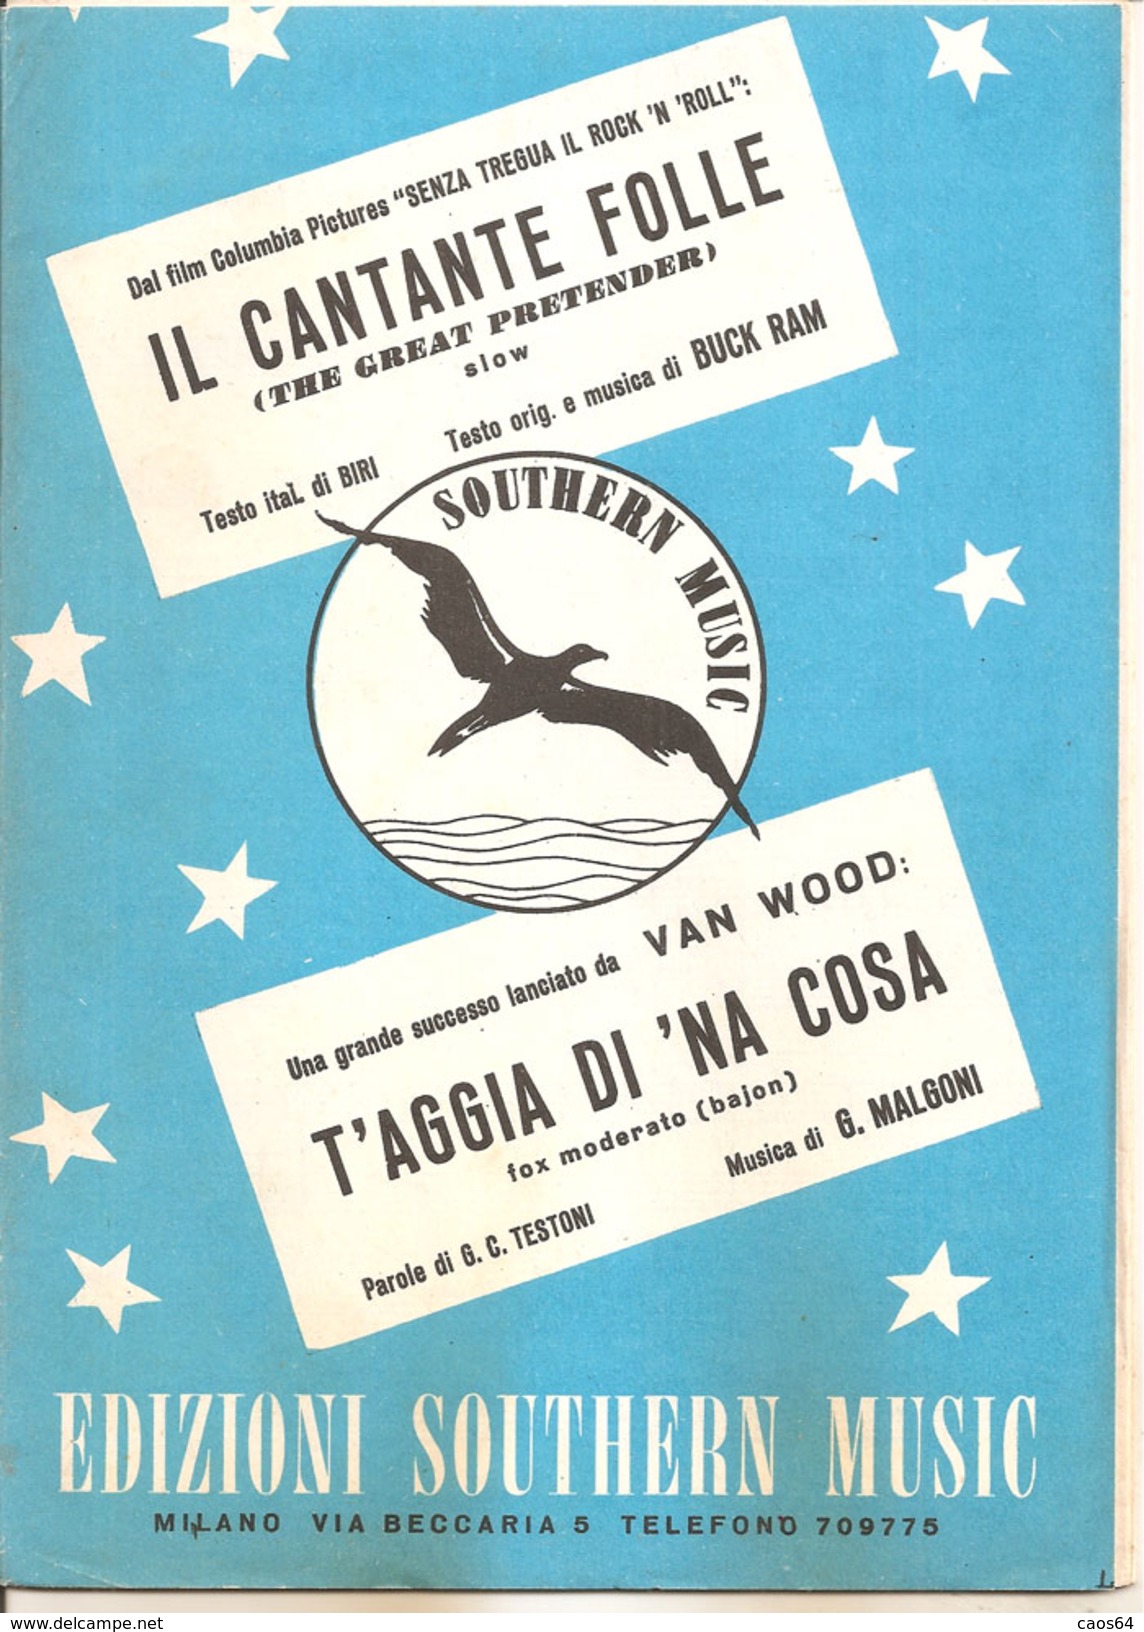 IL CANTANTE FOLLE - T'AGGIA DI 'NA COSA	 Biri Buck Ram Testoni Malgoni  Edizioni Southern Music - Scholingsboek